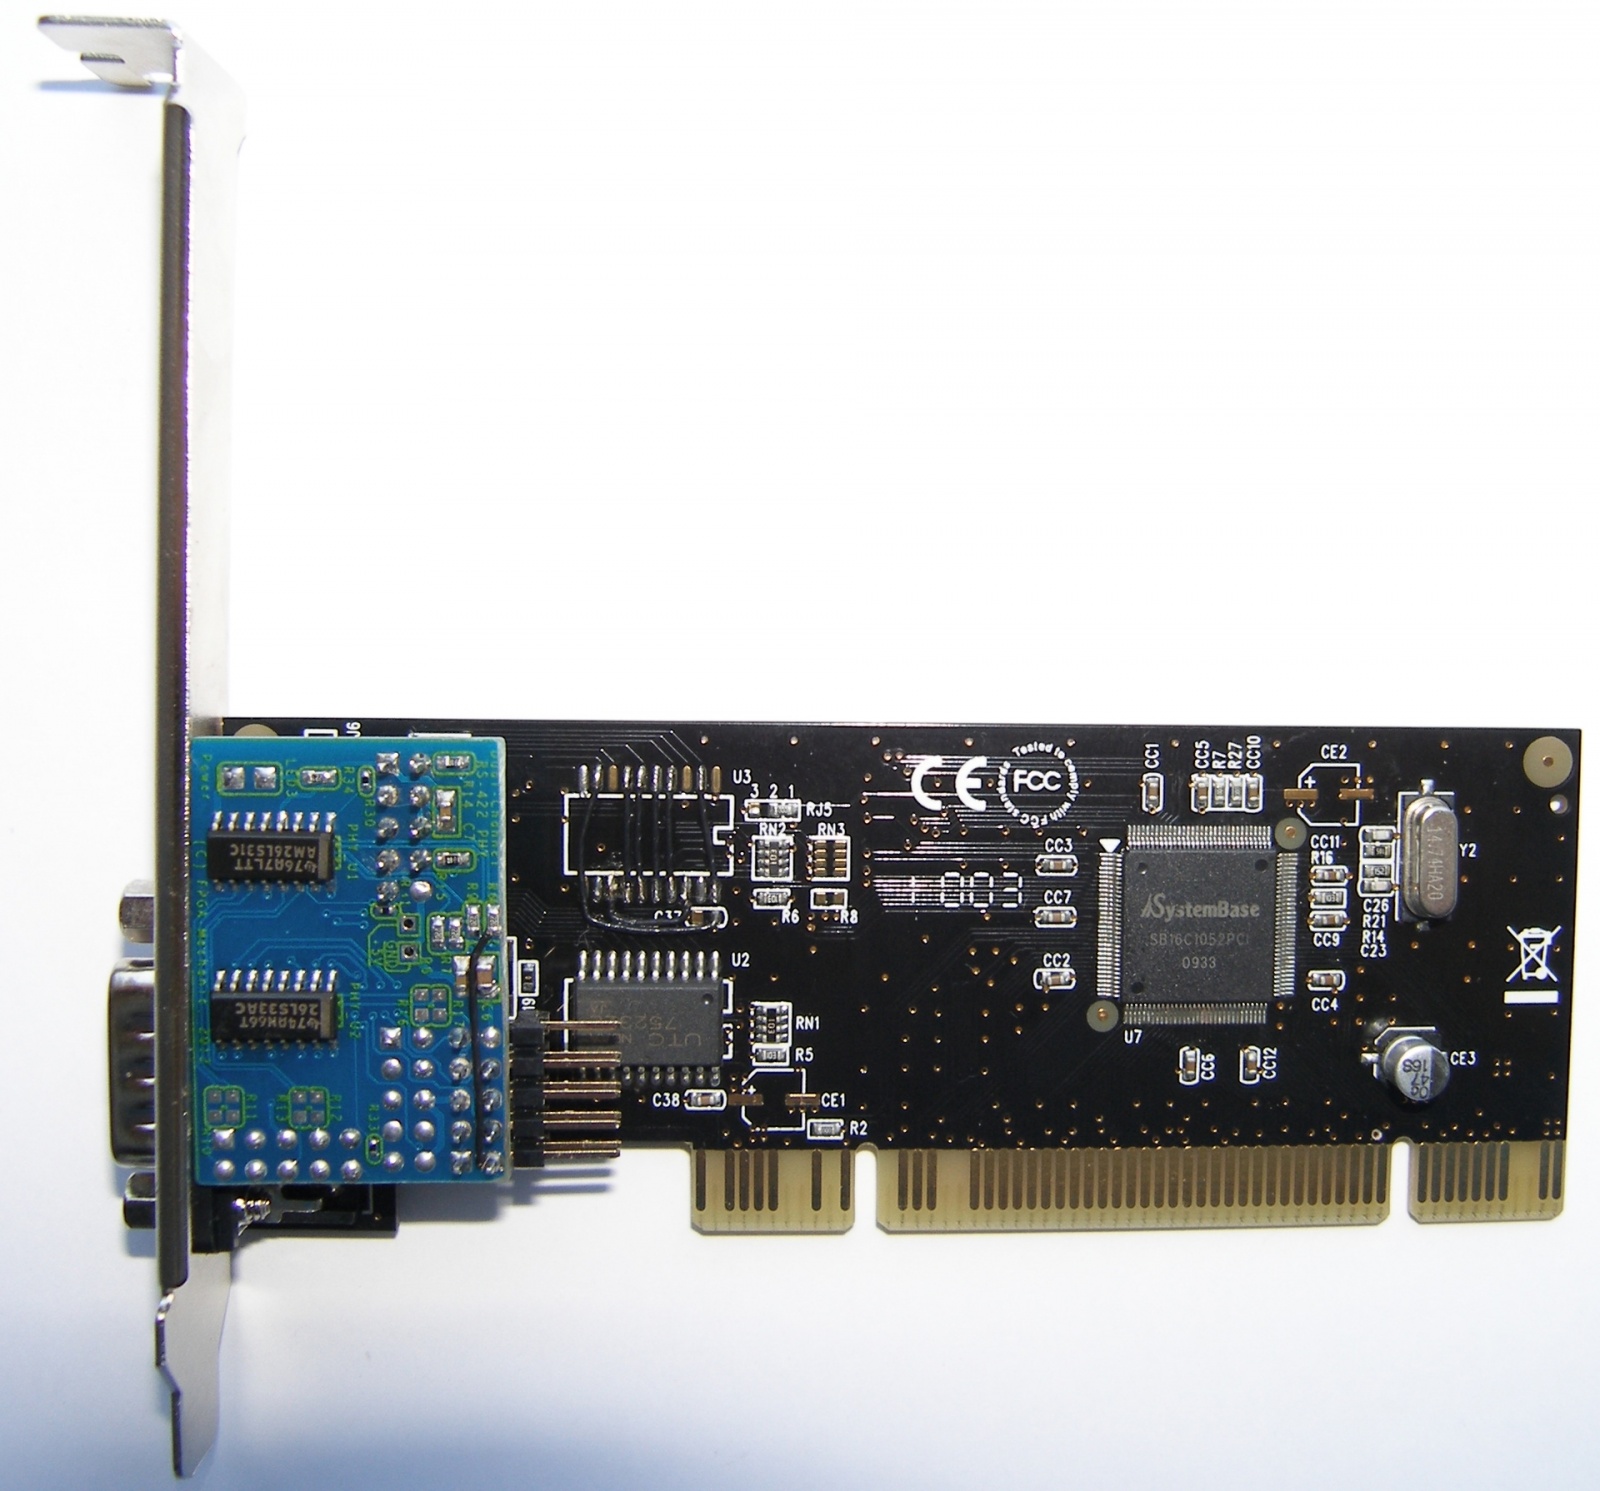 Адаптеры сопряжения RS-422 с поддержкой скоростей до 1Мбод для системной шины PCI - 28